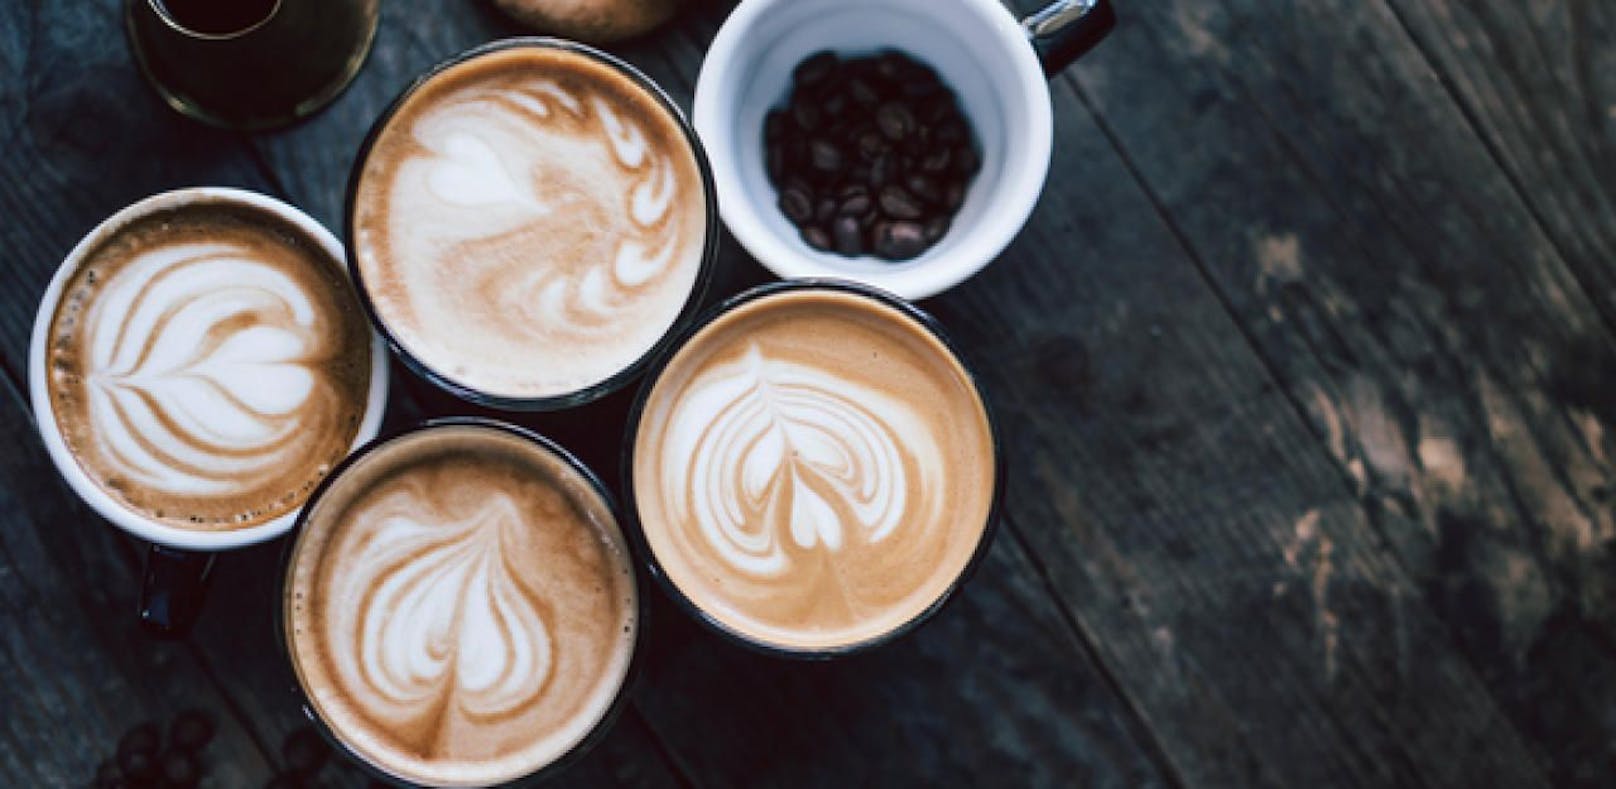 Gute Nachrichten für Kaffee-Liebhaber: Drei bis vier Tassen pro Tag sind gesund. (Symbolbild)